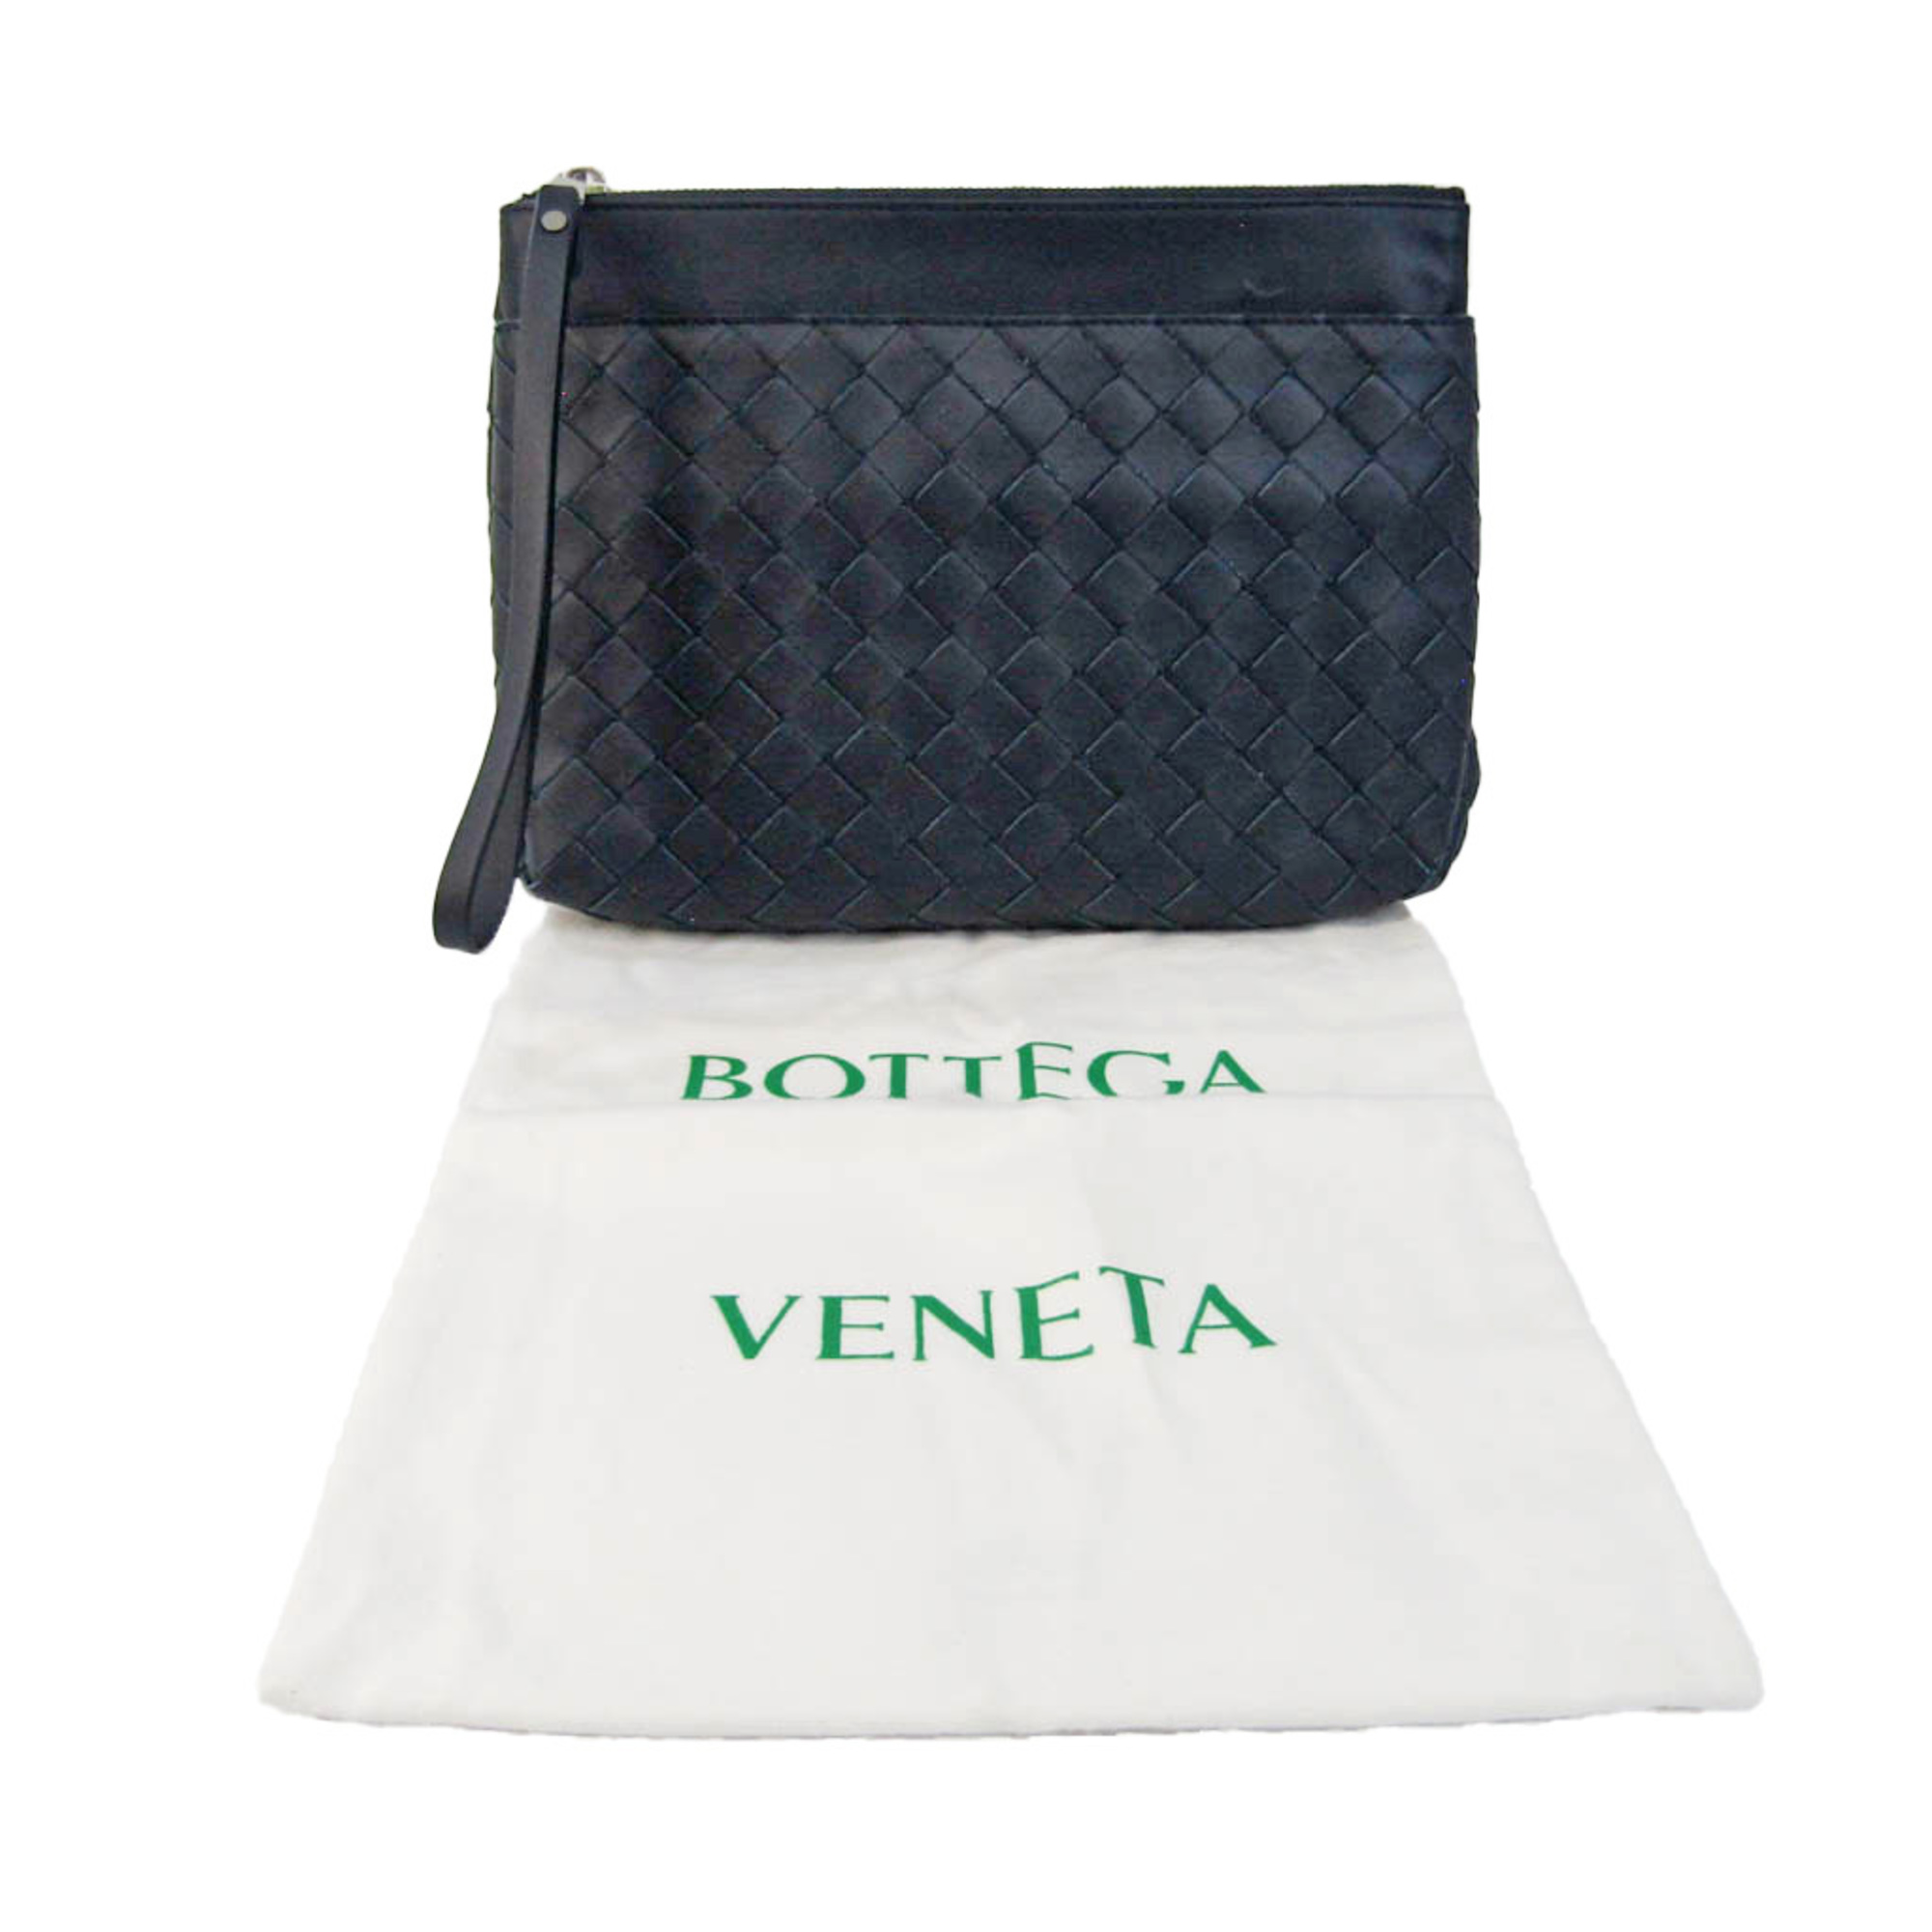 ボッテガ・ヴェネタ(Bottega Veneta) イントレチャート メンズ レザー 